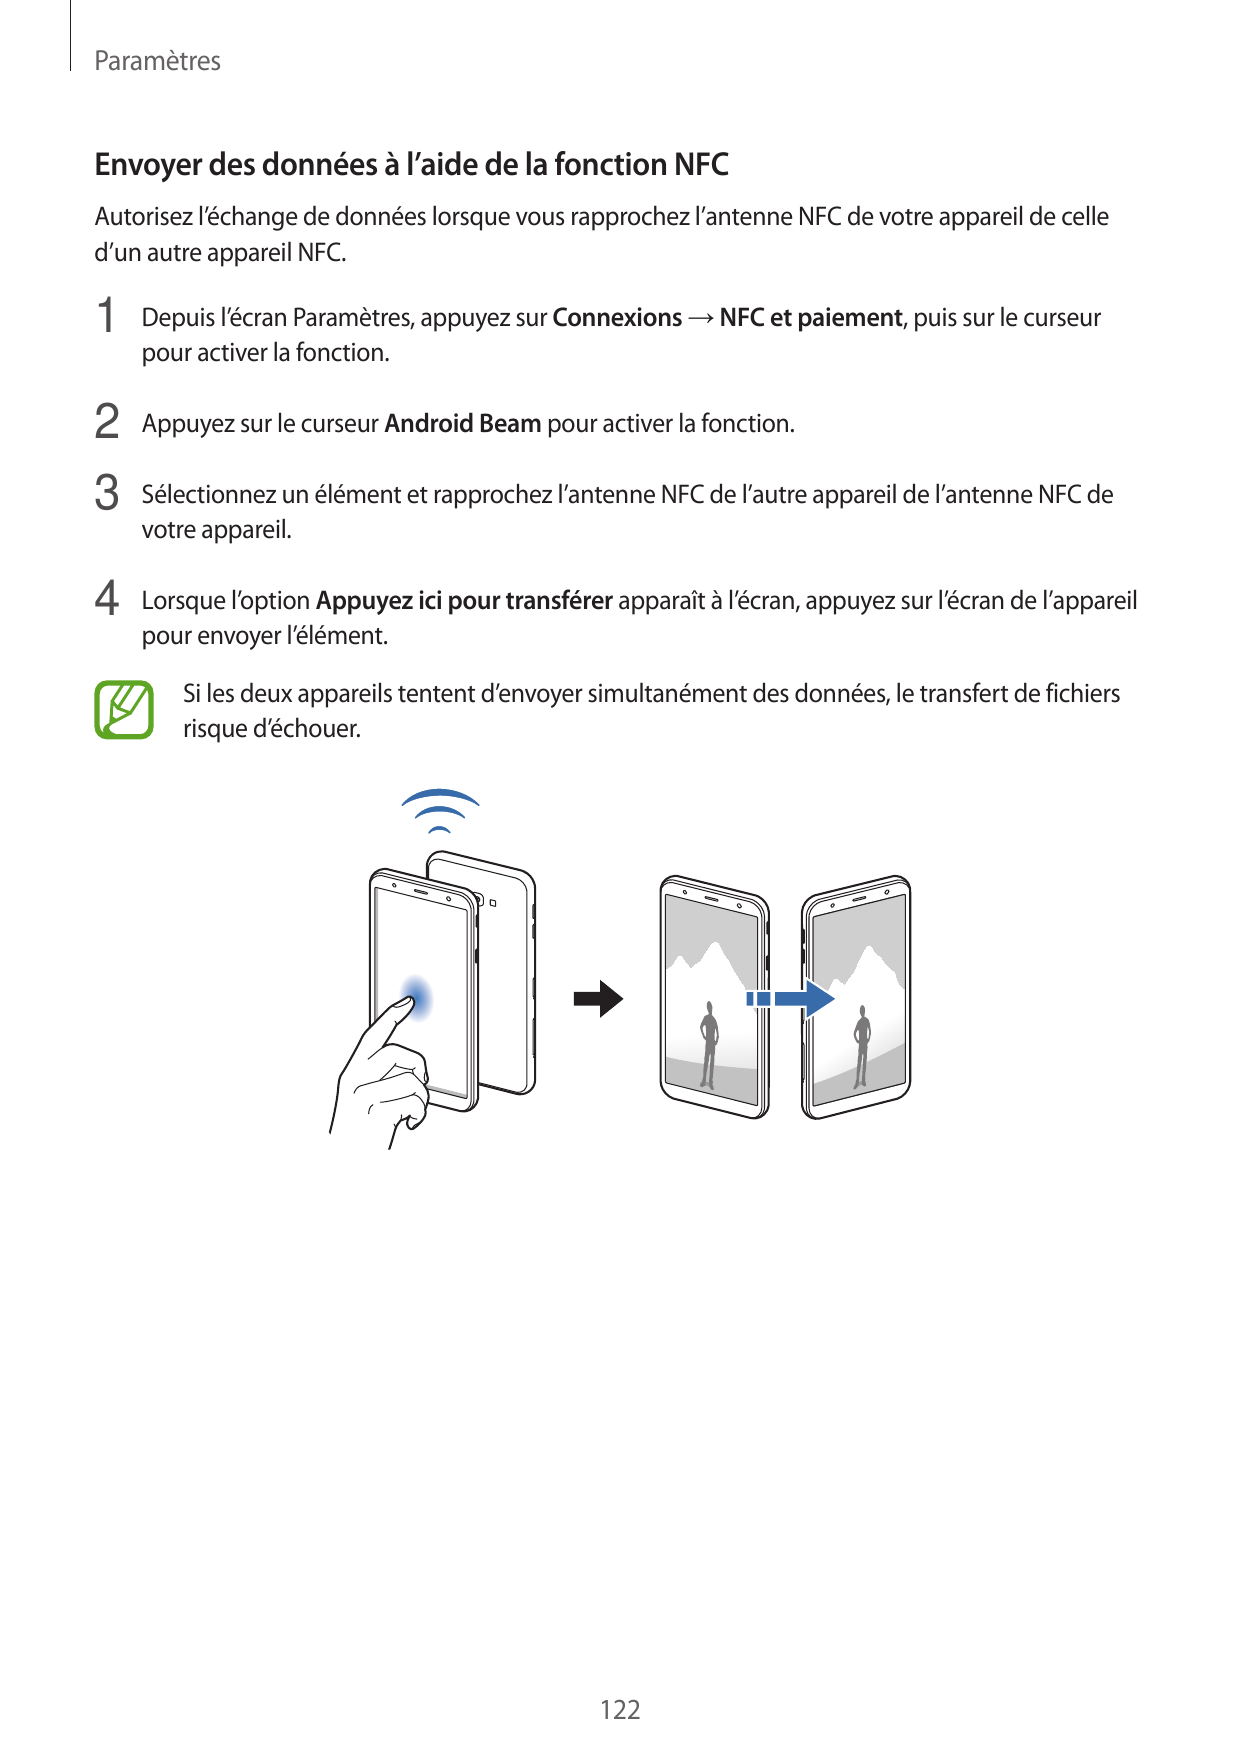 ParamètresEnvoyer des données à l’aide de la fonction NFCAutorisez l’échange de données lorsque vous rapprochez l’antenne NFC de